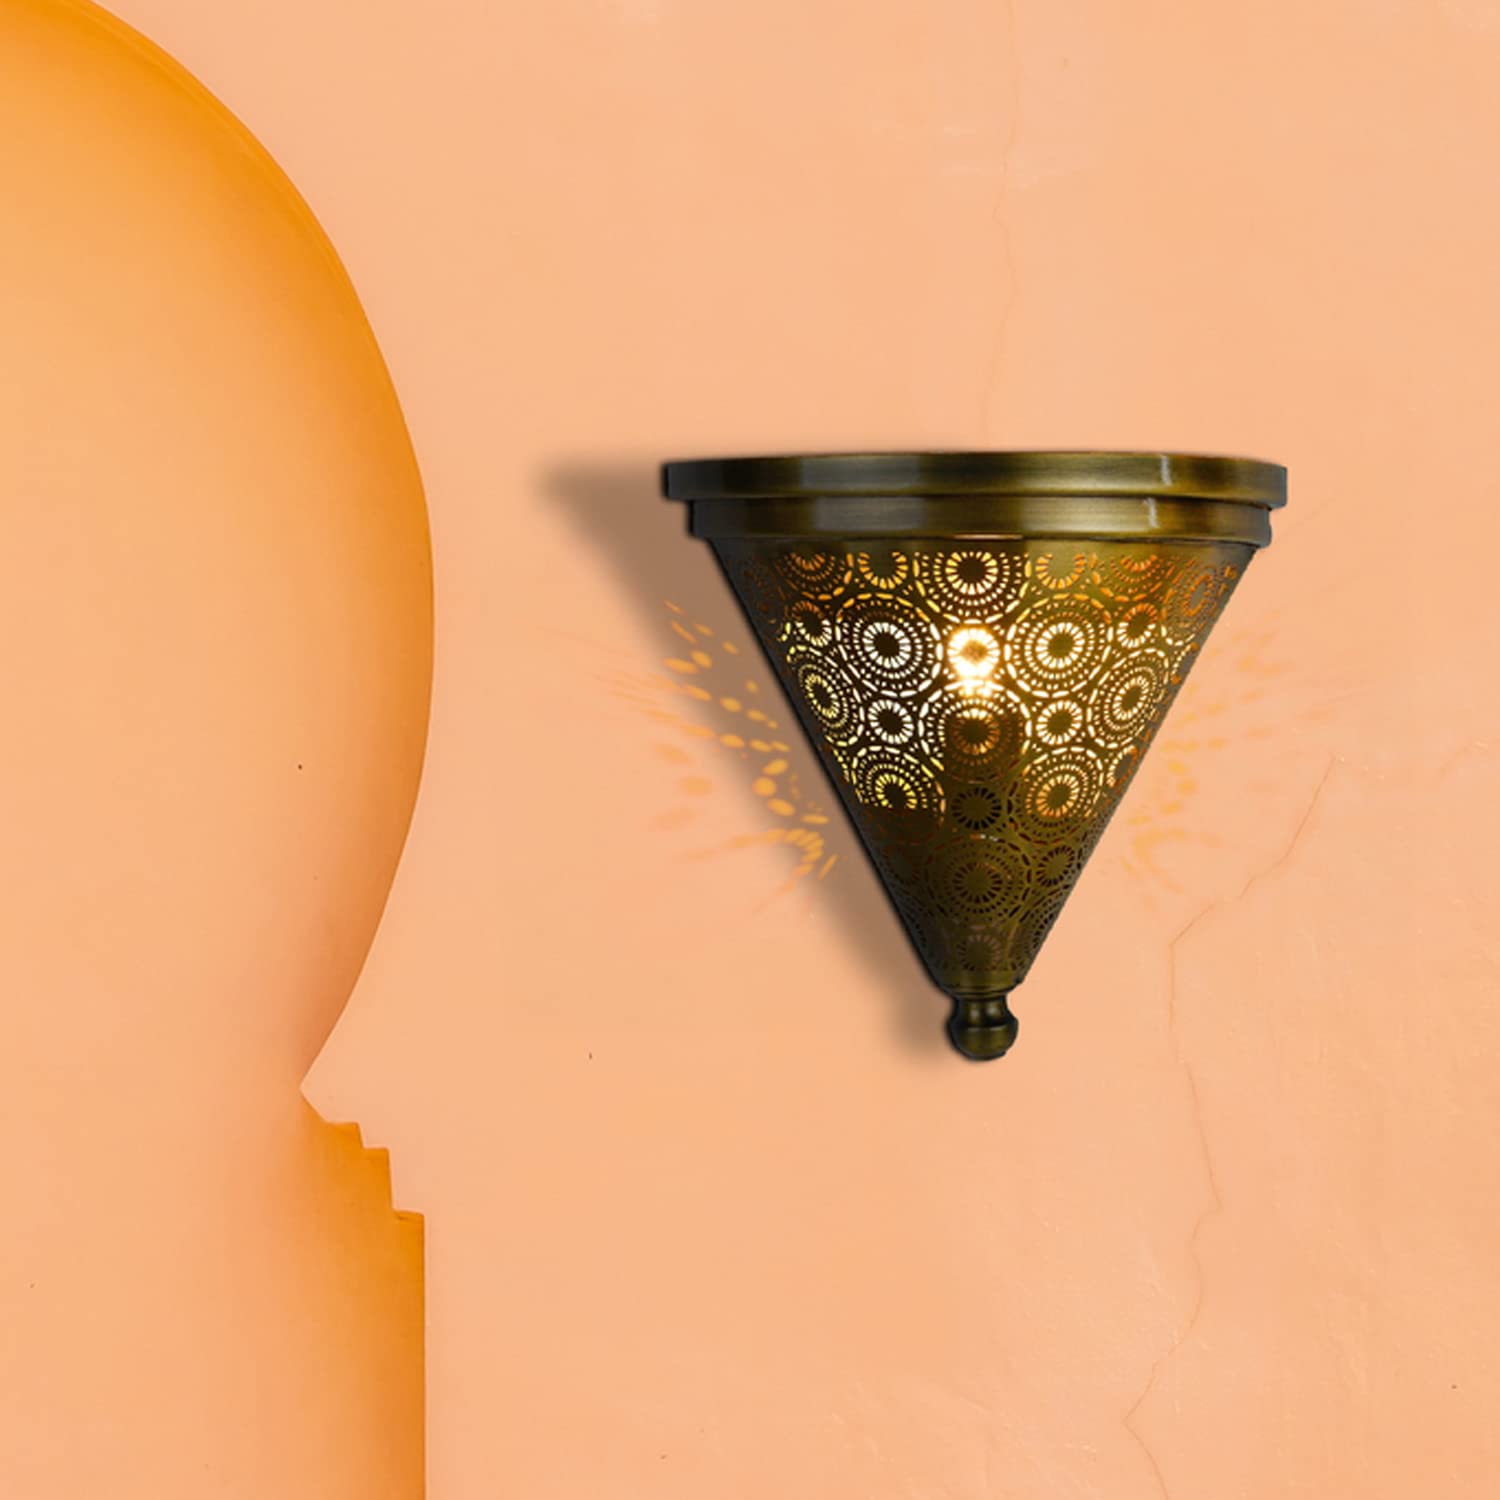 Marrakesch Orientalische Lampe Wandleuchte aus Metall Wandlampe Leuchte Firas Gold 31cm als Wanddeko